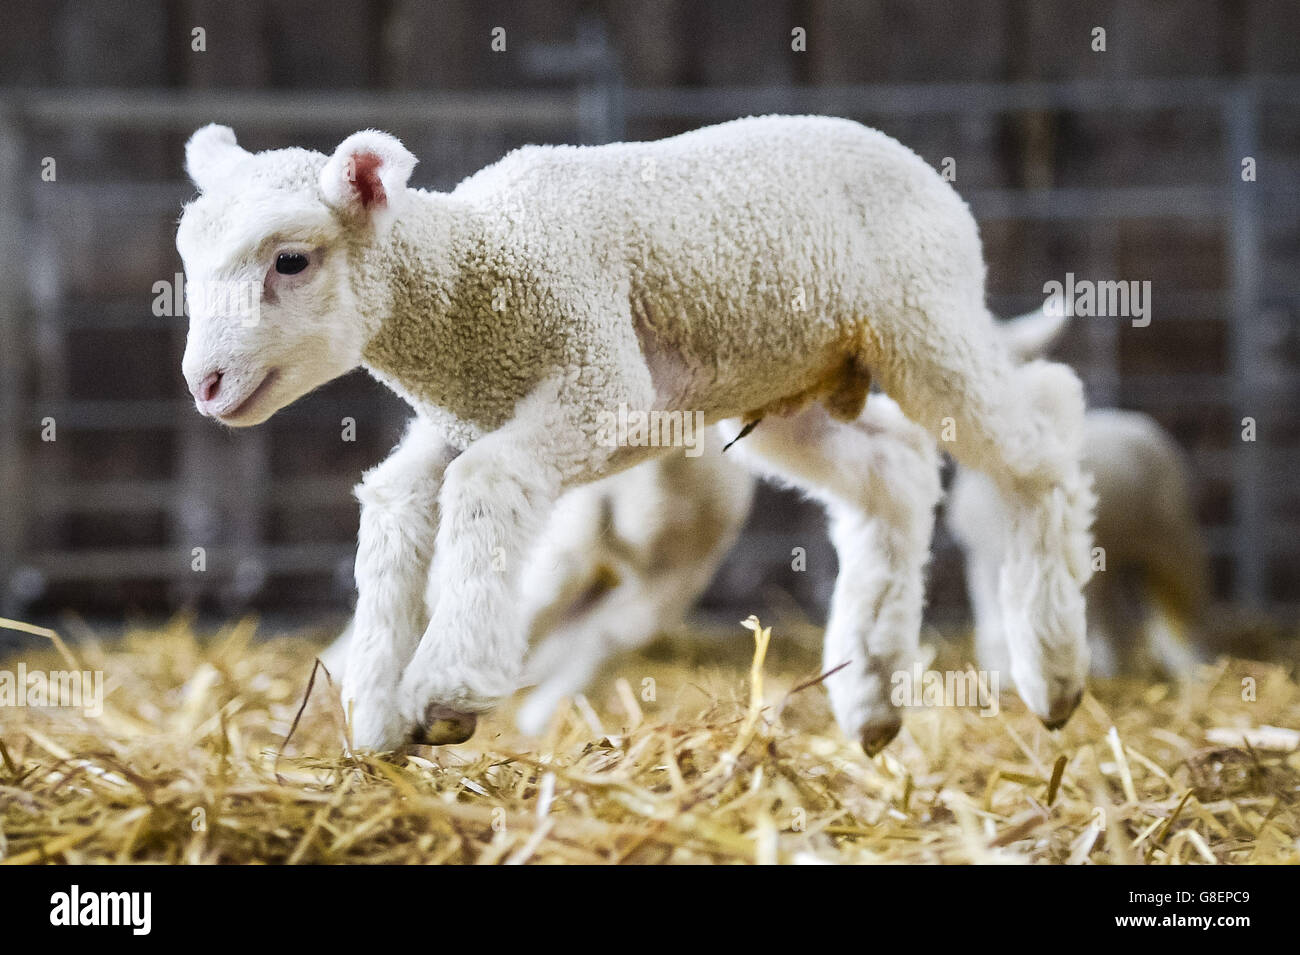 Una settimana di agnello molle in aria come appena quattro agnelli neonati sono nati a Olde House, Cornovaglia, dove il tempo mite ha contribuito a facilitare l'agnello precoce presso la fattoria. Foto Stock